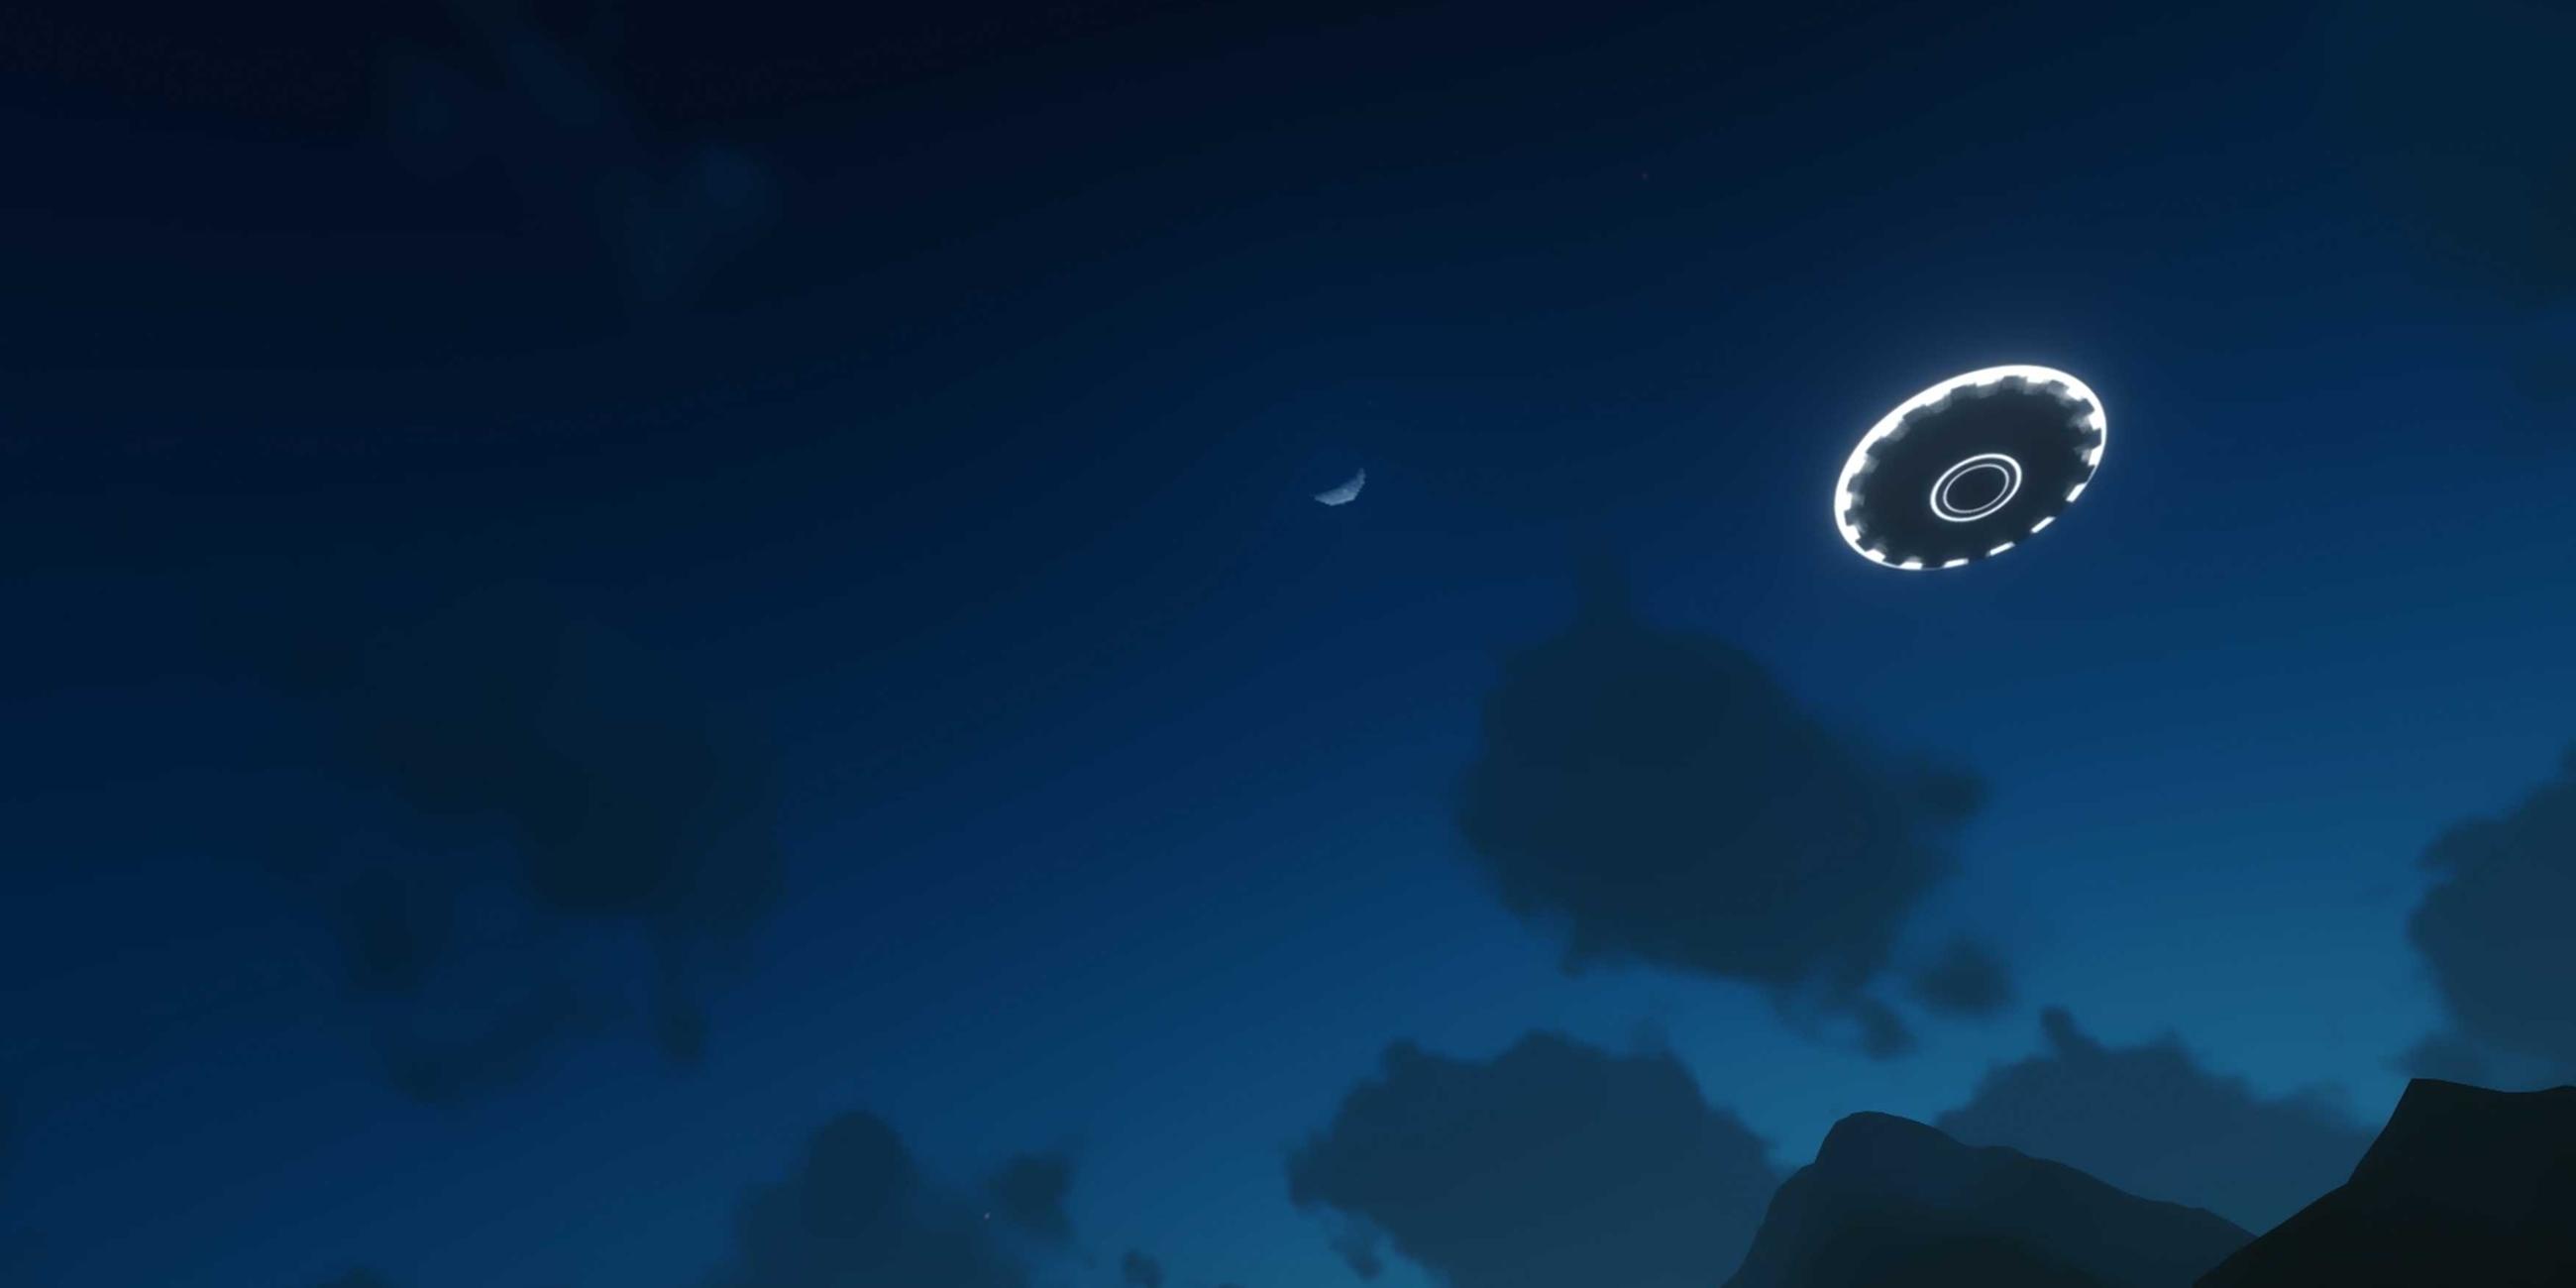  Im Dunkeln ist eine fliegende Untertasse zu sehen, die leuchtet. Im Hintergrund ist der Sichelmond zu sehen.